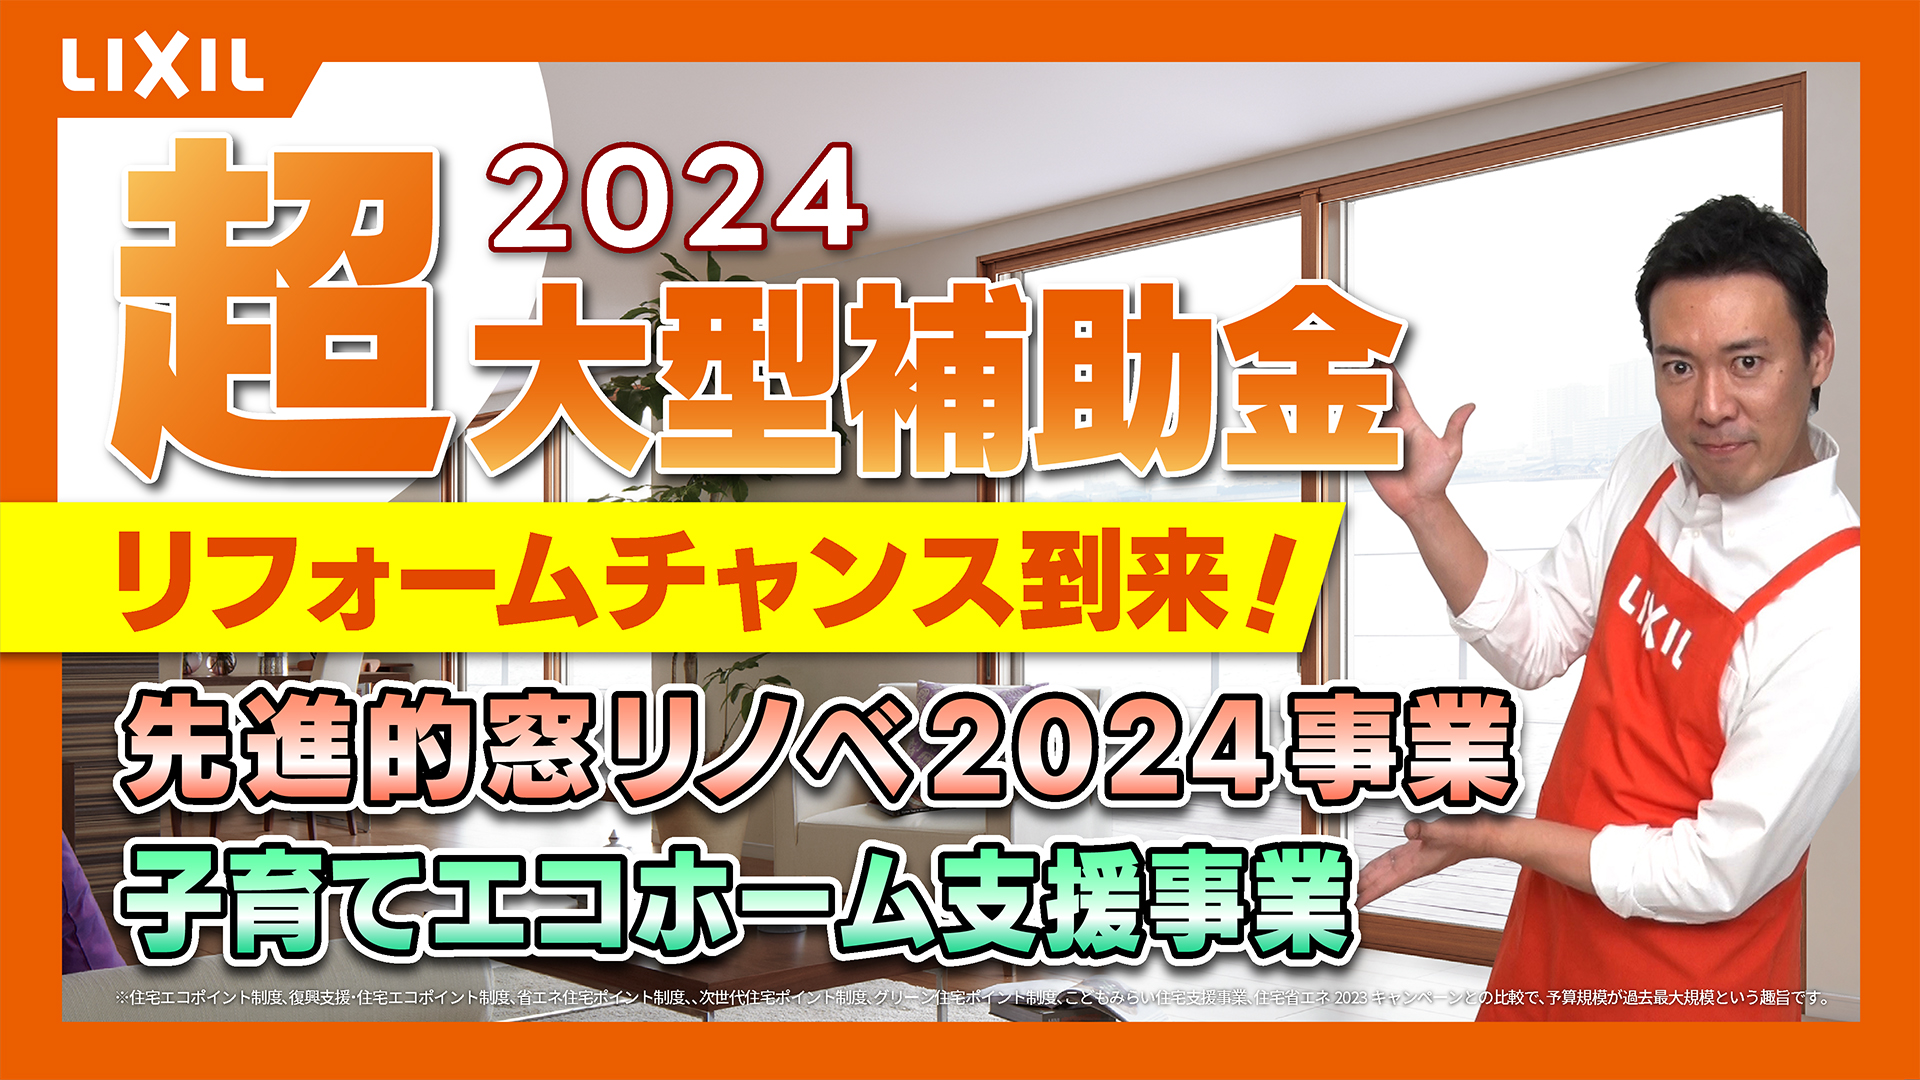 【リフォーム】2024大型補助金